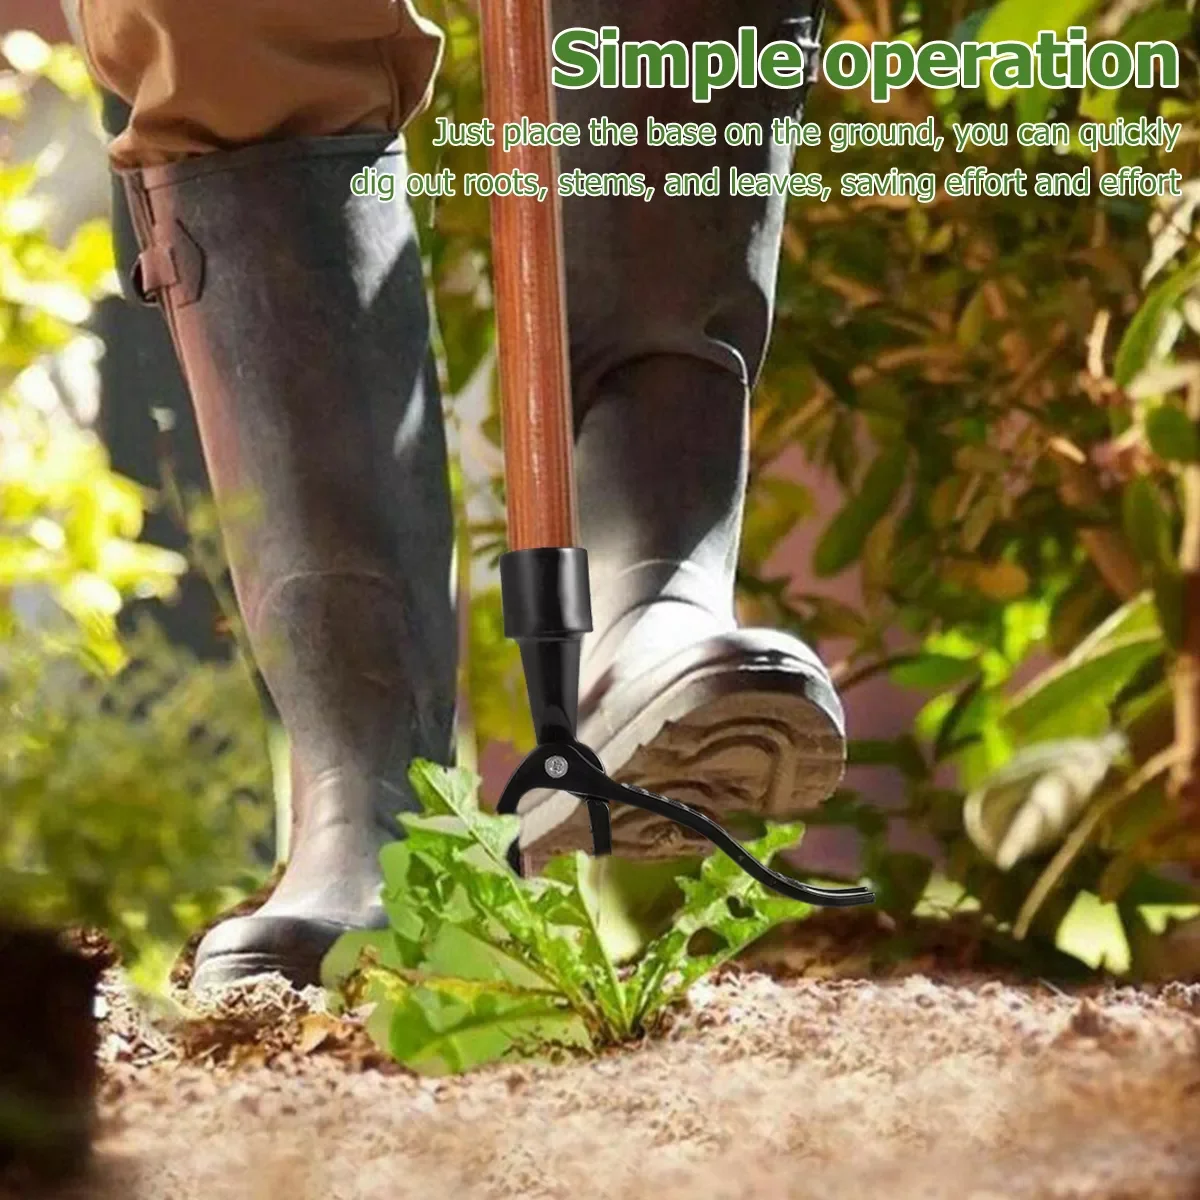 Сменная металлическая головка для вытаскивания сорняков, новейший аксессуар для садоводства, копания, вытаскивания